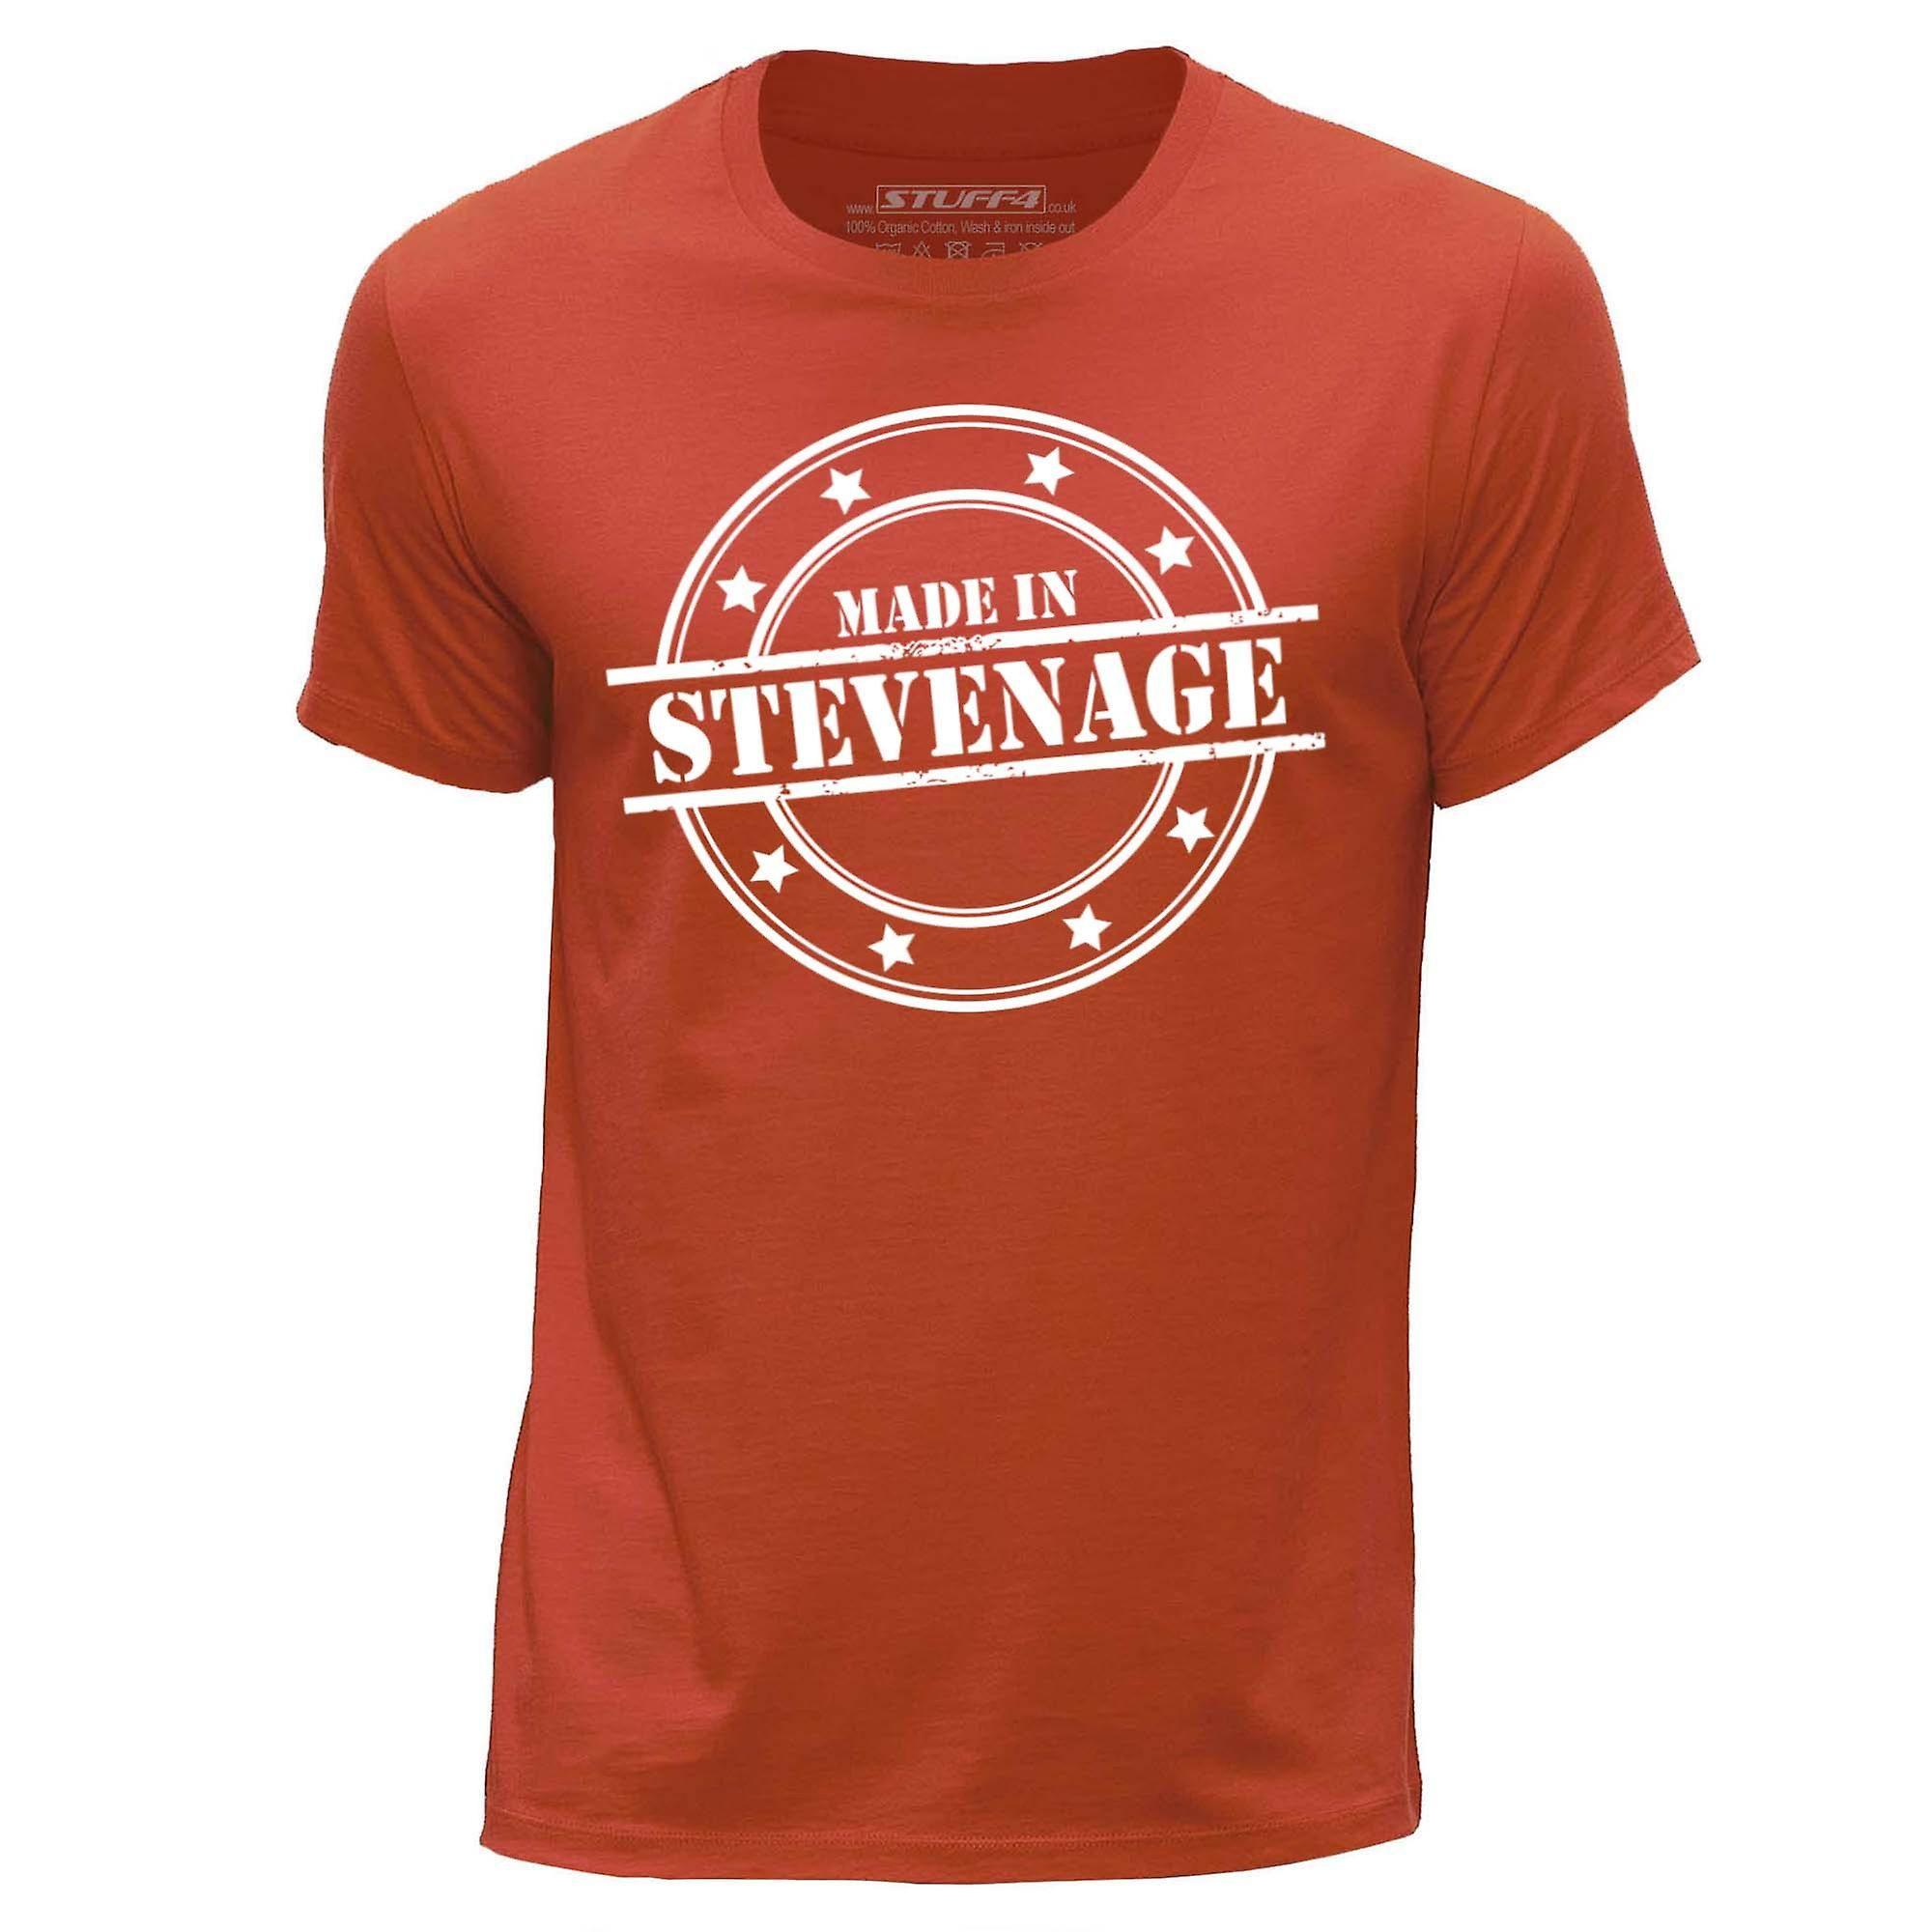 Orange Round Logo - STUFF4 Men's Medium (M) Orange Round Neck T Shirt Made In Stevenage